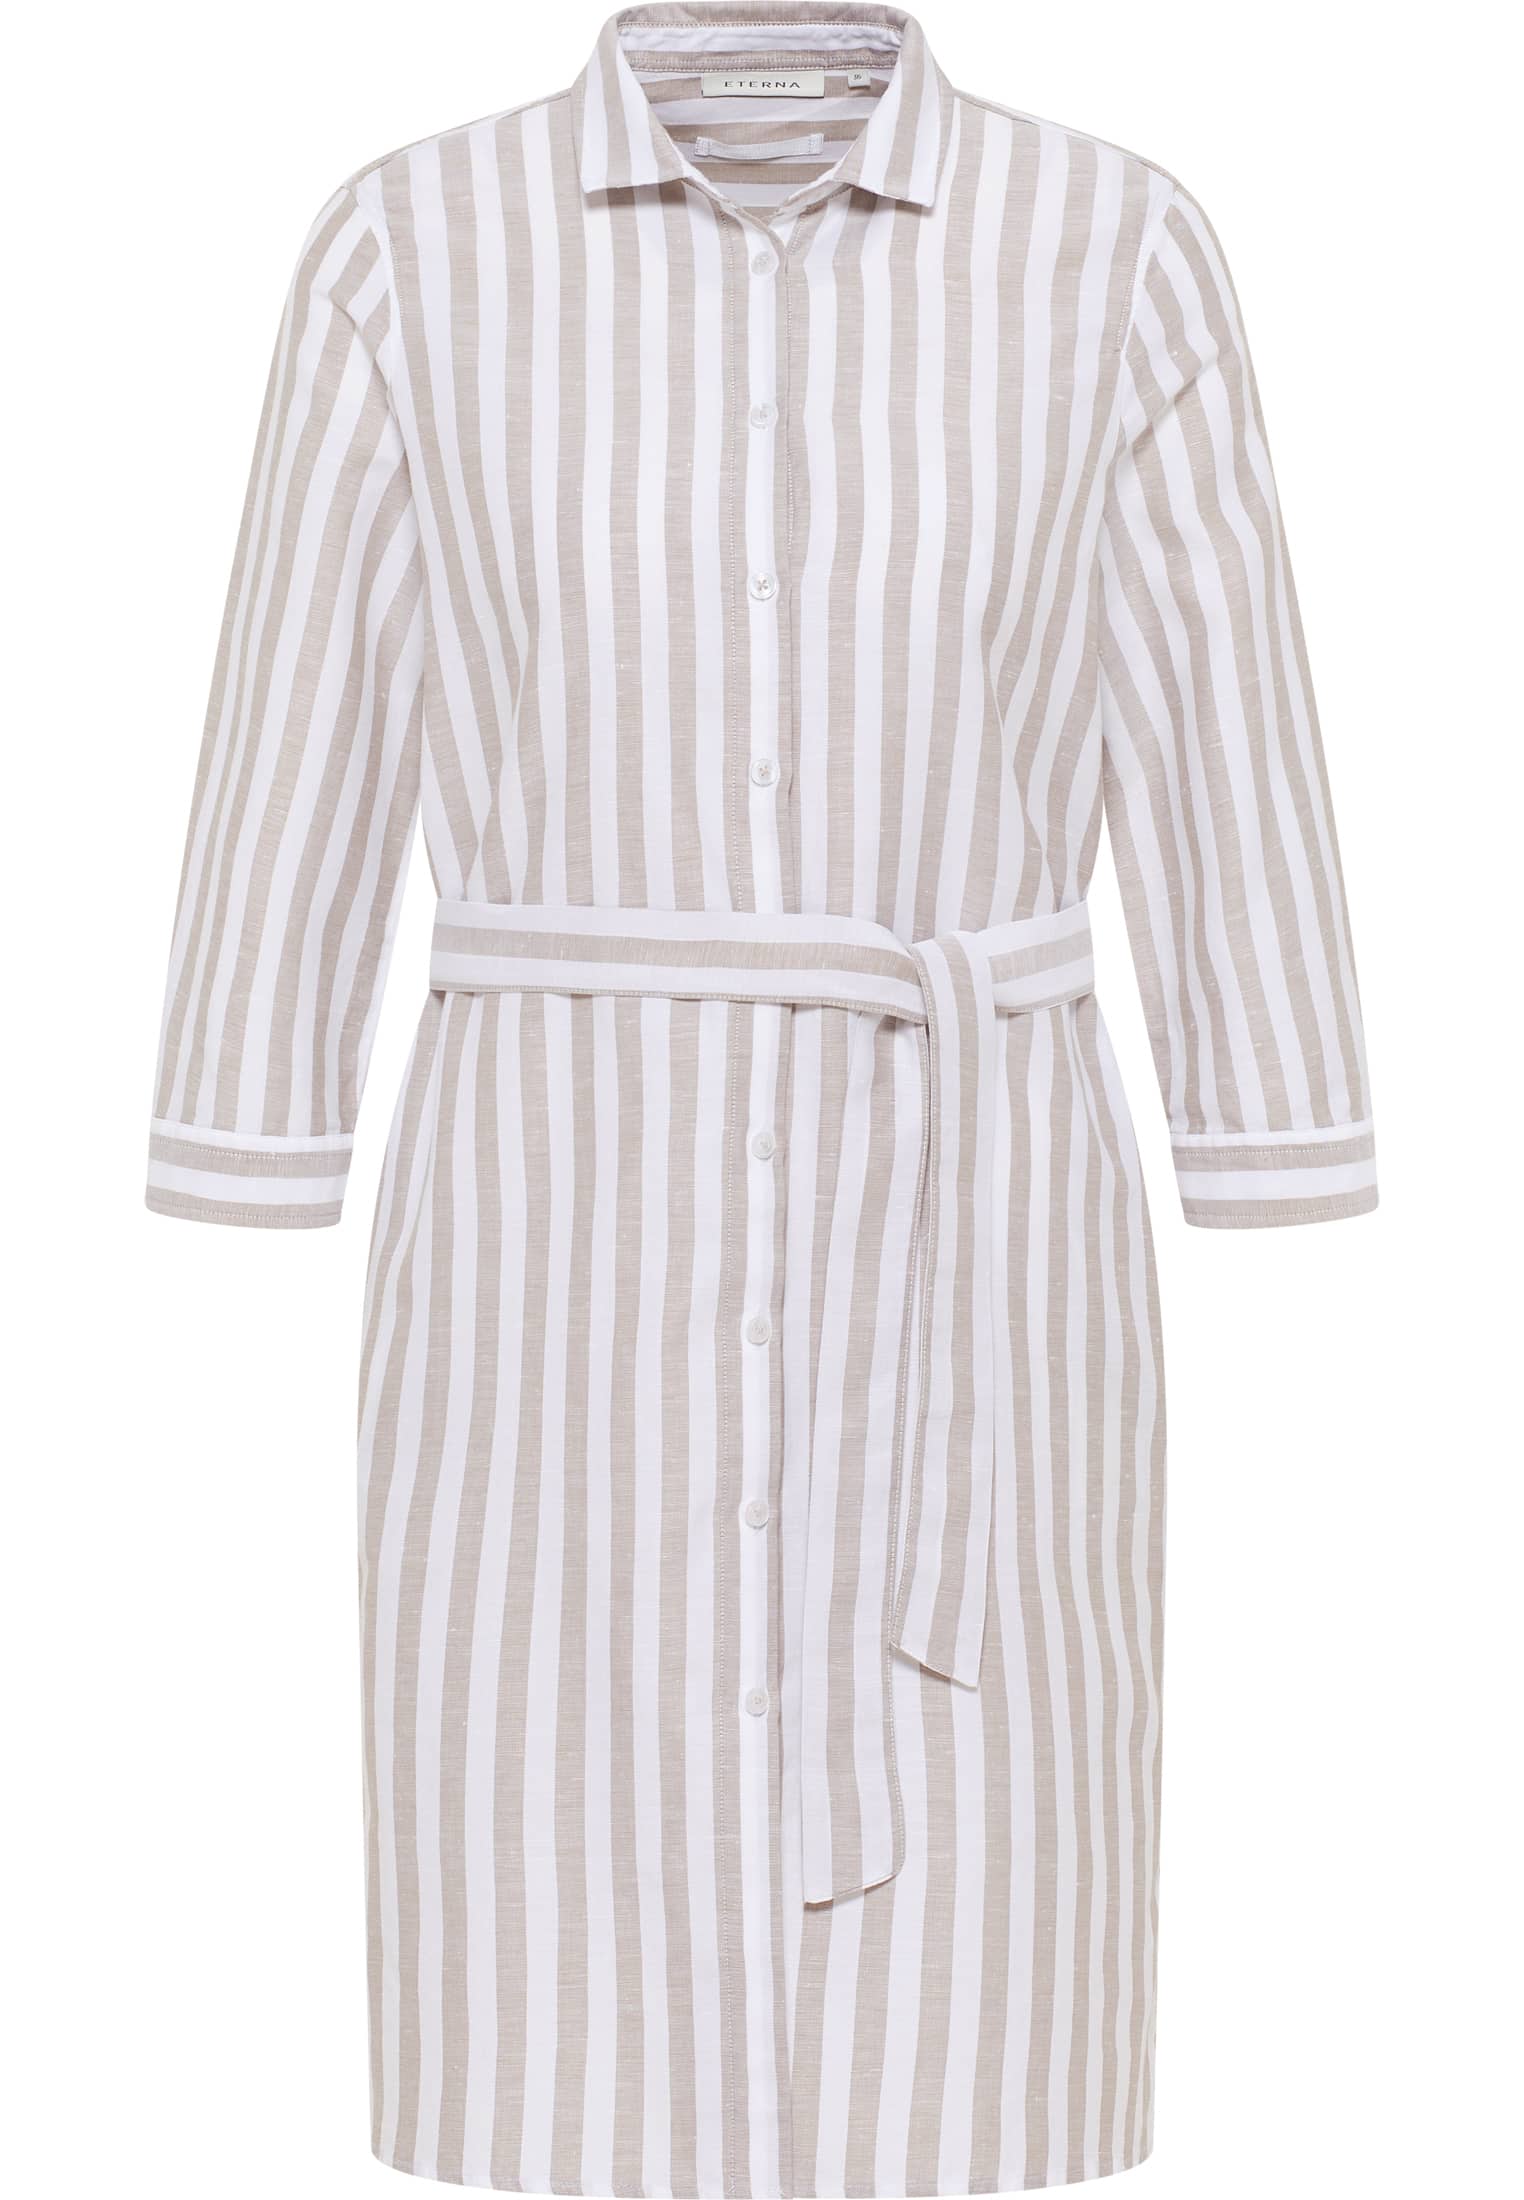 Hemdblusenkleid in khaki striped | khaki | 34 | 3/4 sleeves |  2DR00267-04-52-34-3/4